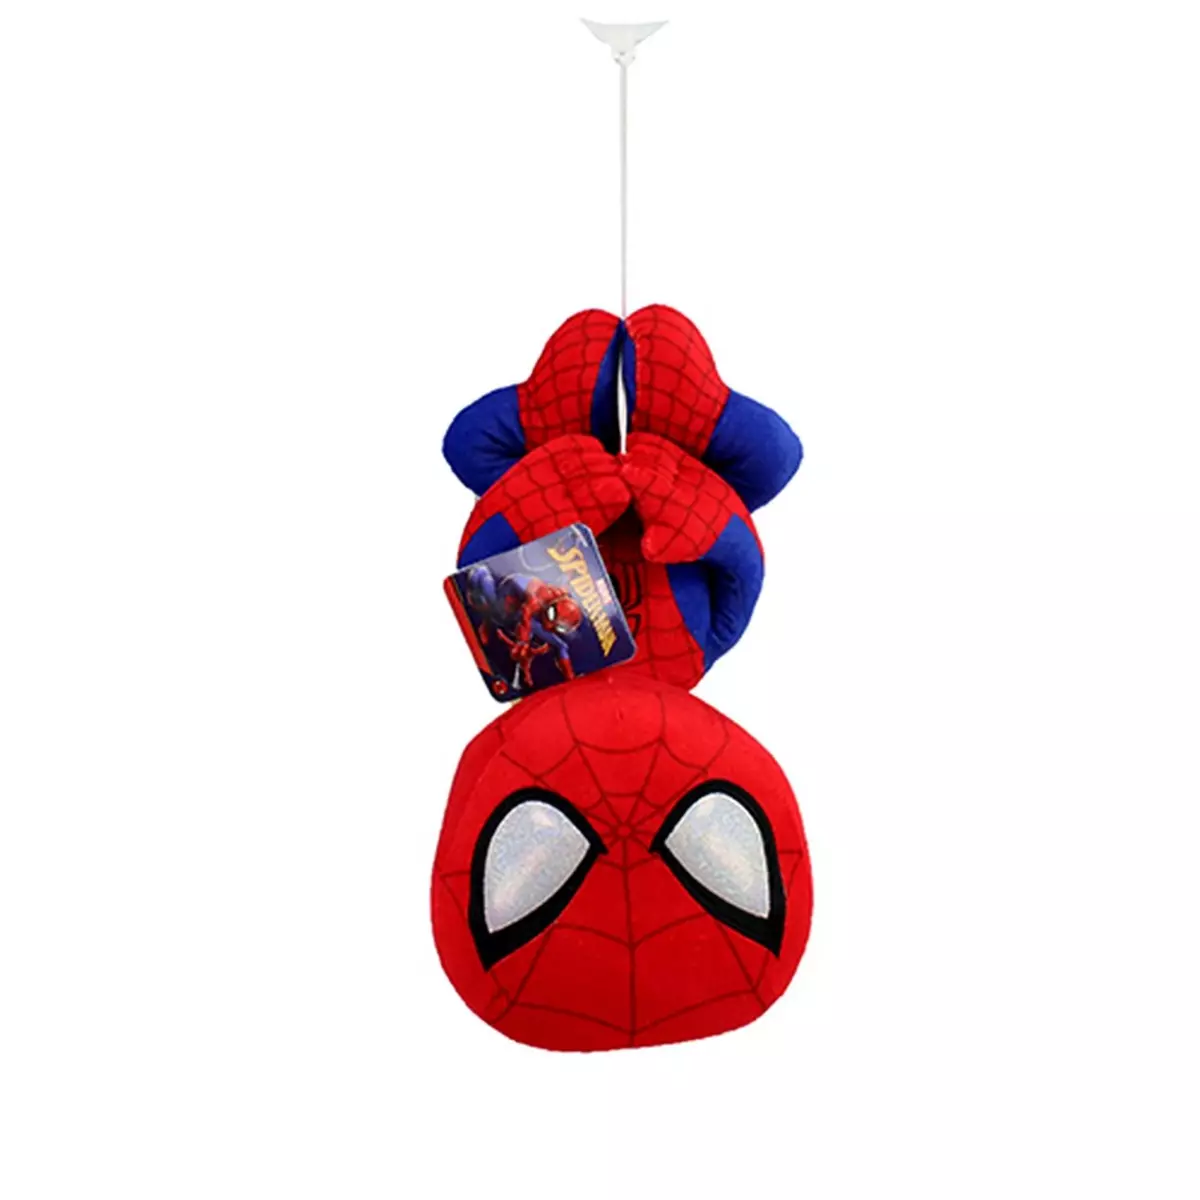  Grande peluche Spiderman 33 cm suspendu